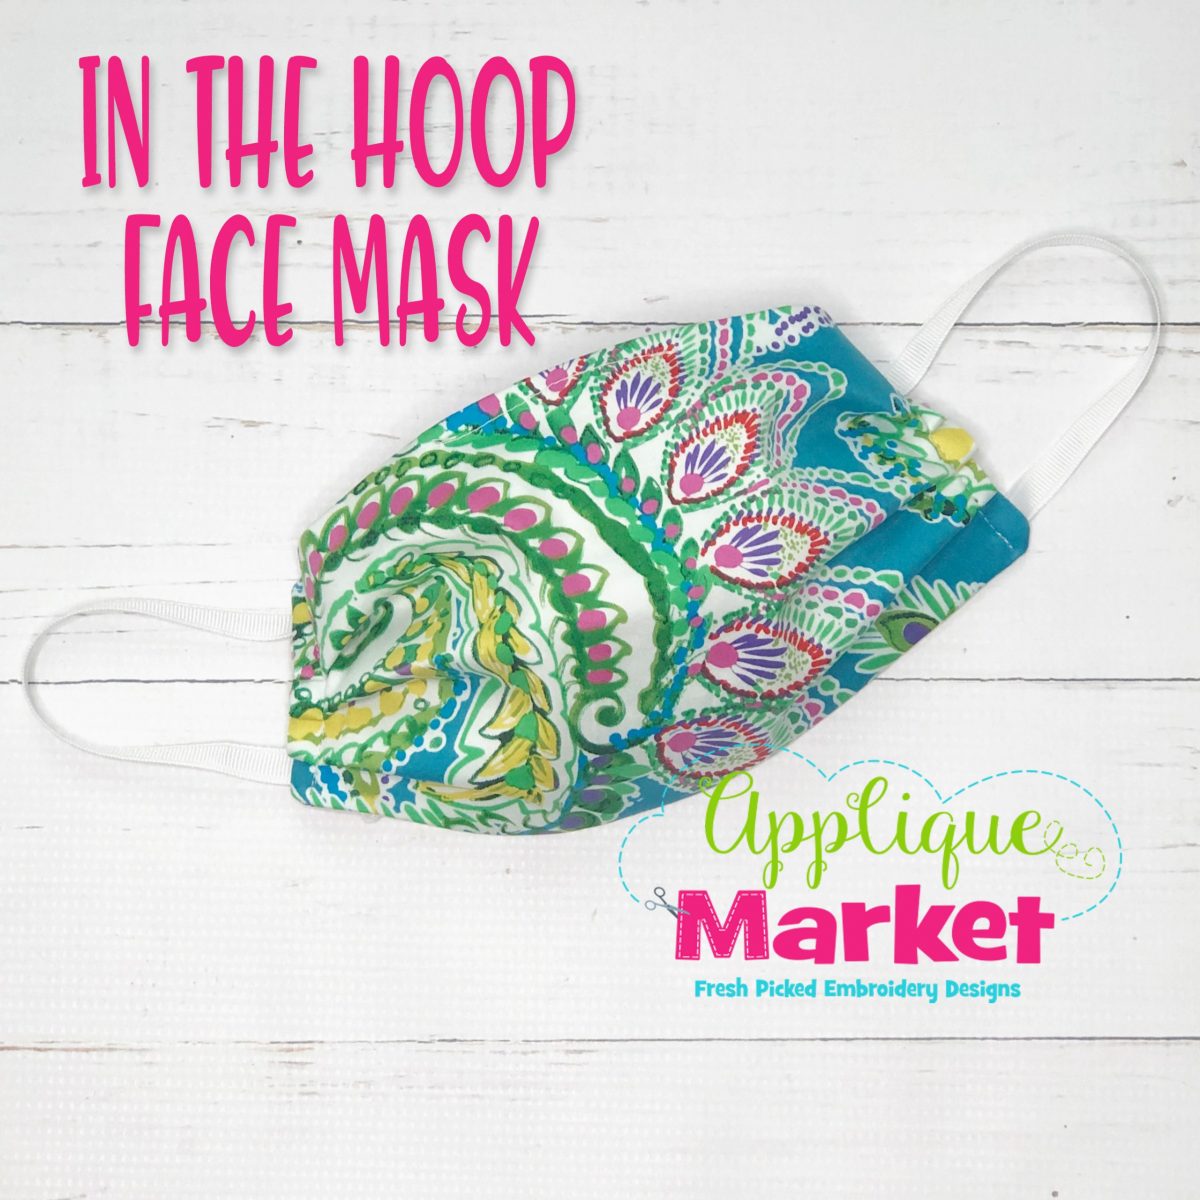 Face Mask ITH Sakura Embroidery Design Cherry blossom Face Mask ITH Embroidery Design Spring In The Hoop Face Mask Embroidery Design